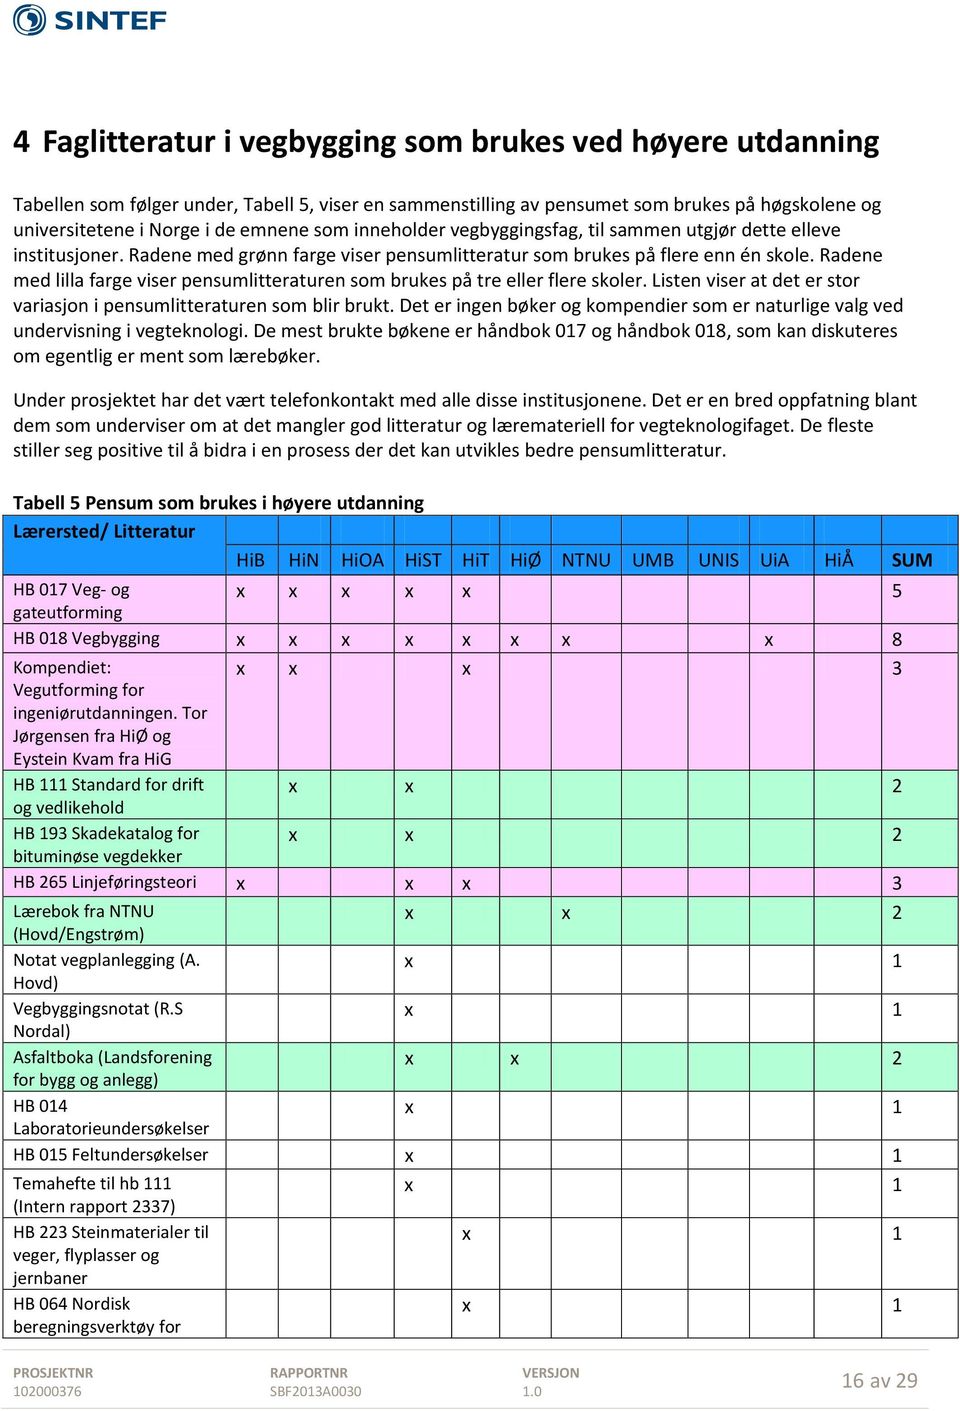 Radene med lilla farge viser pensumlitteraturen som brukes på tre eller flere skoler. Listen viser at det er stor variasjon i pensumlitteraturen som blir brukt.